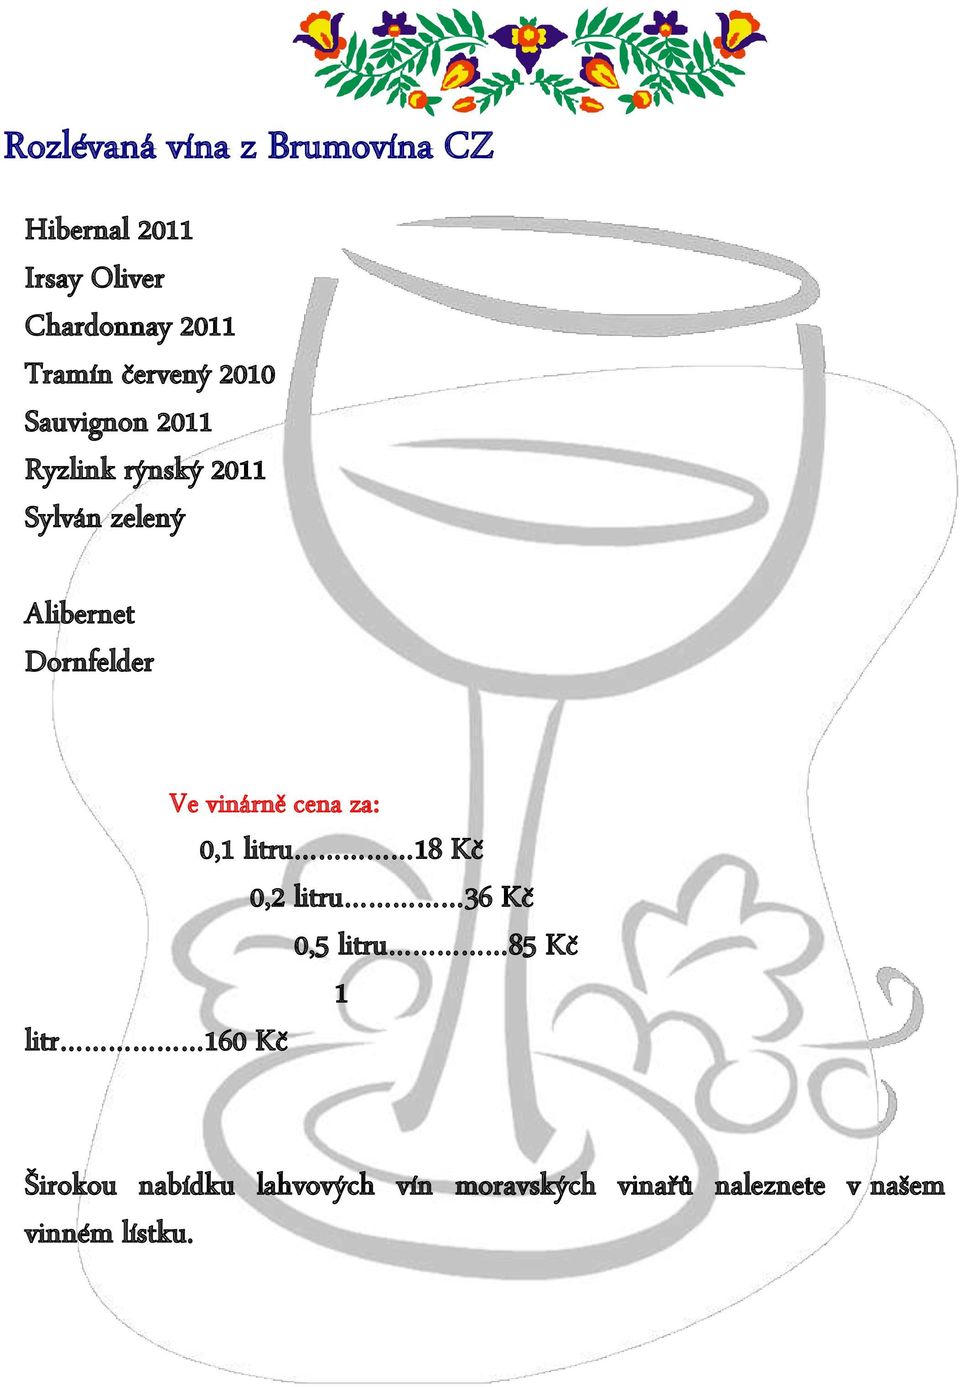 Dornfelder Ve vinárně cena za: 0,1 litru 18 Kč 0,2 litru 36 Kč 0,5 litru 85 Kč 1